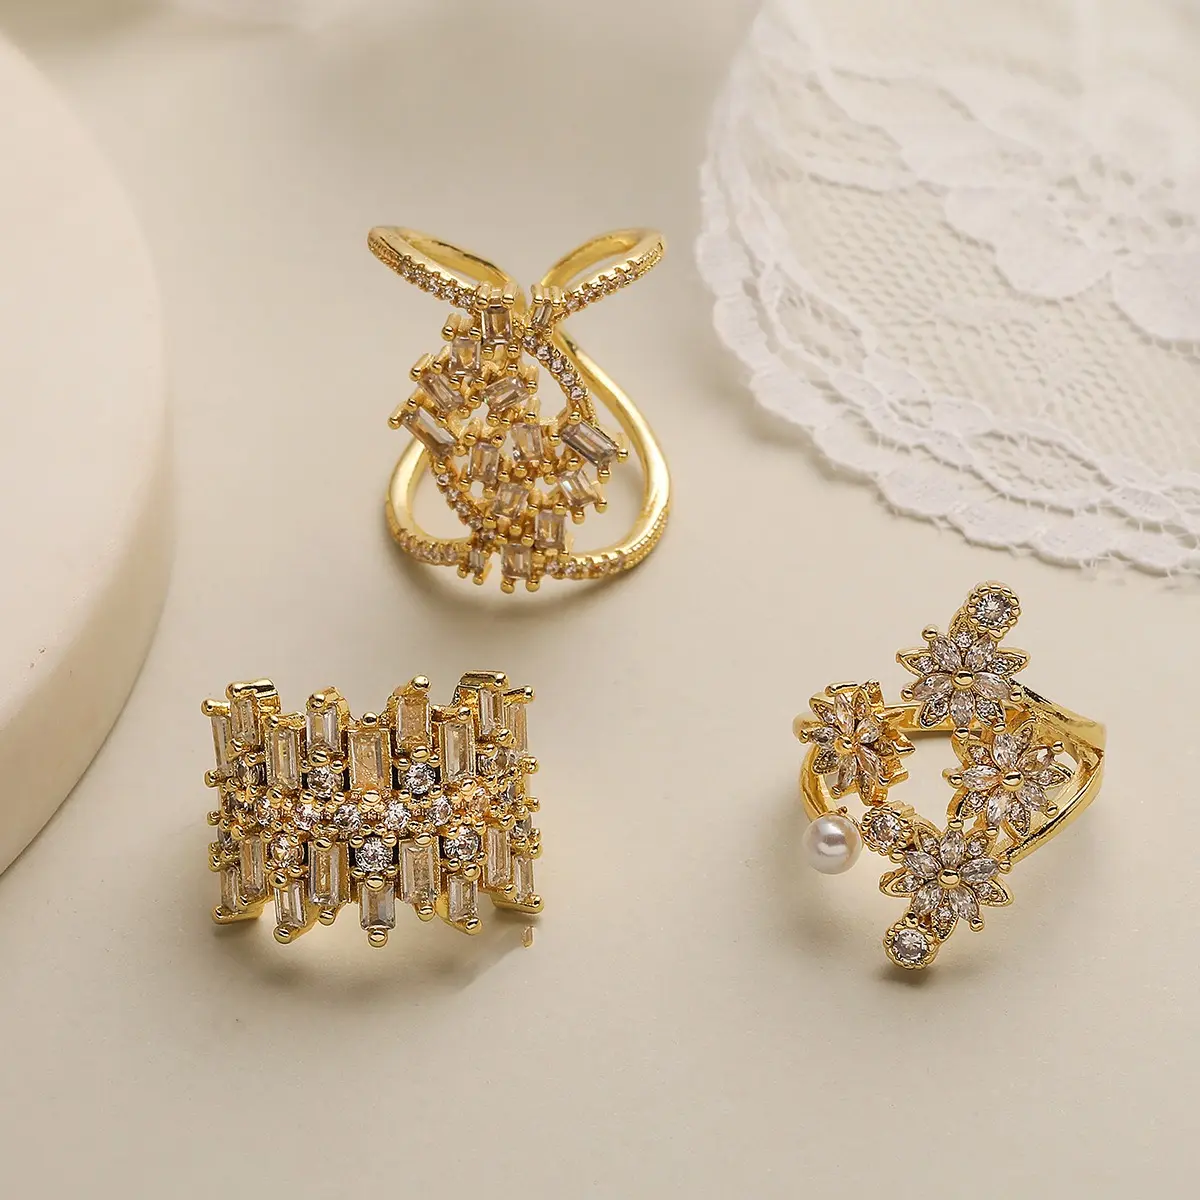 BD-B5075 Merveilleux Cour style fleur anneau parfait princesse cadeau vintage anneaux pour femmes mode anneaux bijoux